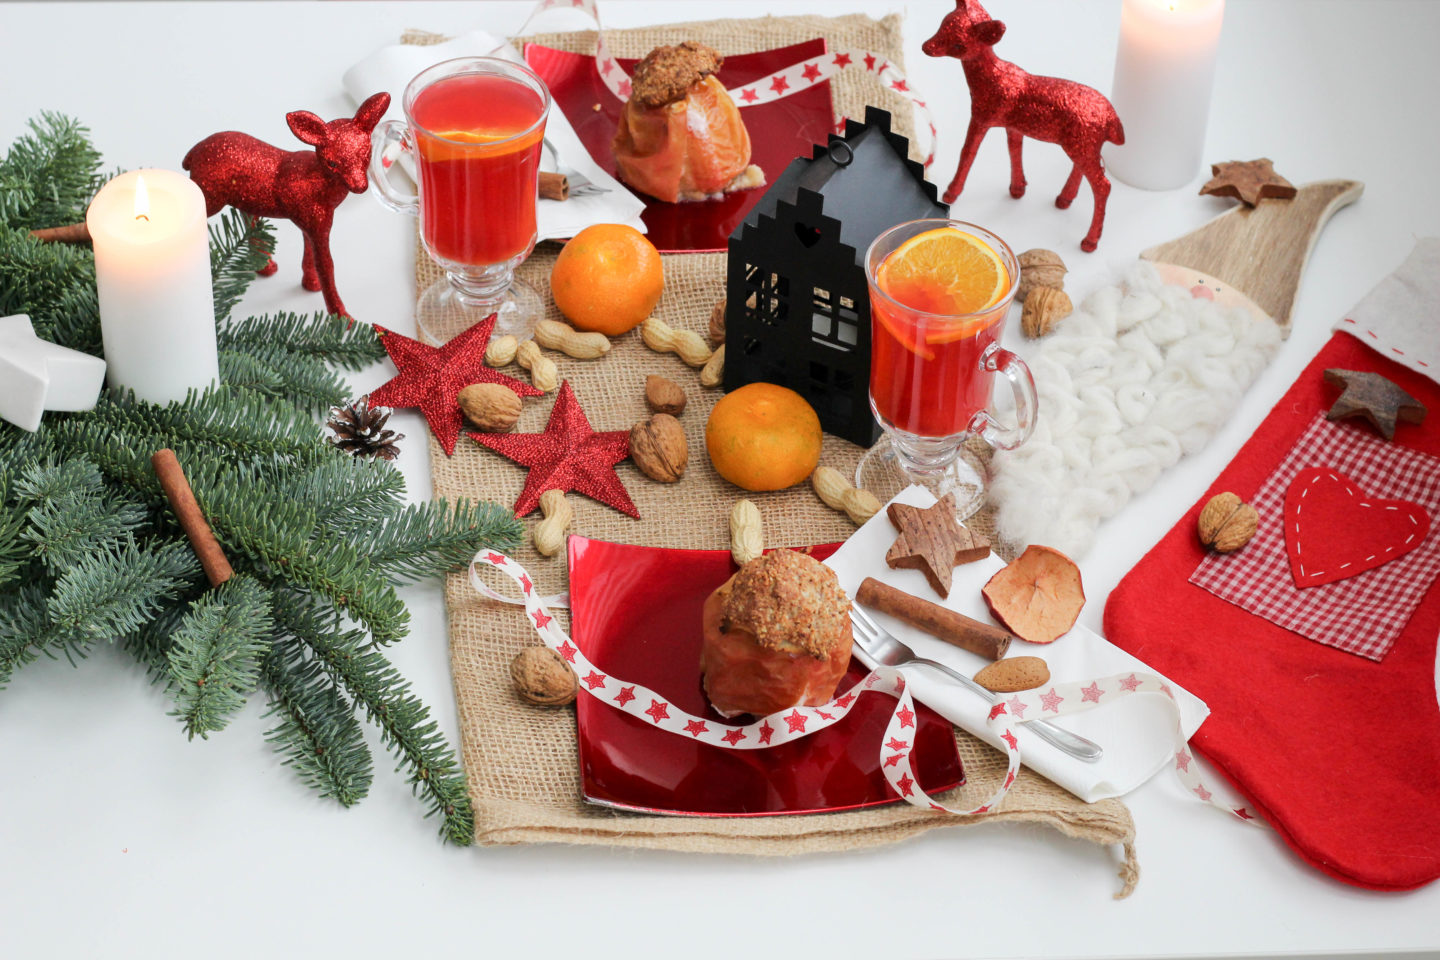 vegan-nikolaus-krampus-weihnachten-bratapfel-germteig-perchten-nuesse-christmas-soulfood-homespa-plantbased